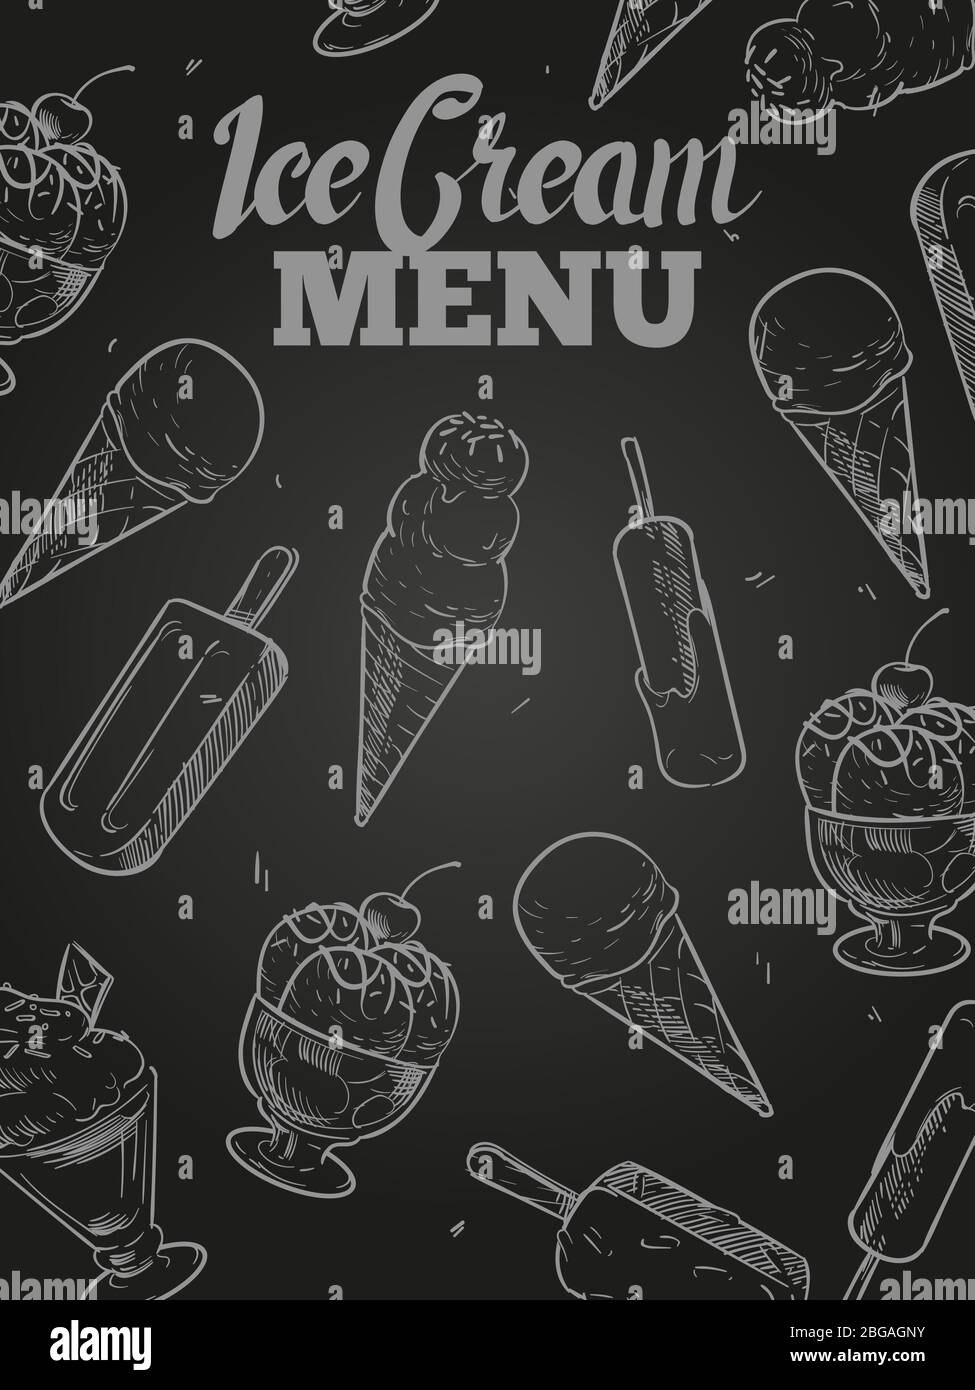 Abdeckung für die Speisekarte mit Eiscreme – Poster für Tafeleis. Vektorgrafik Stock Vektor